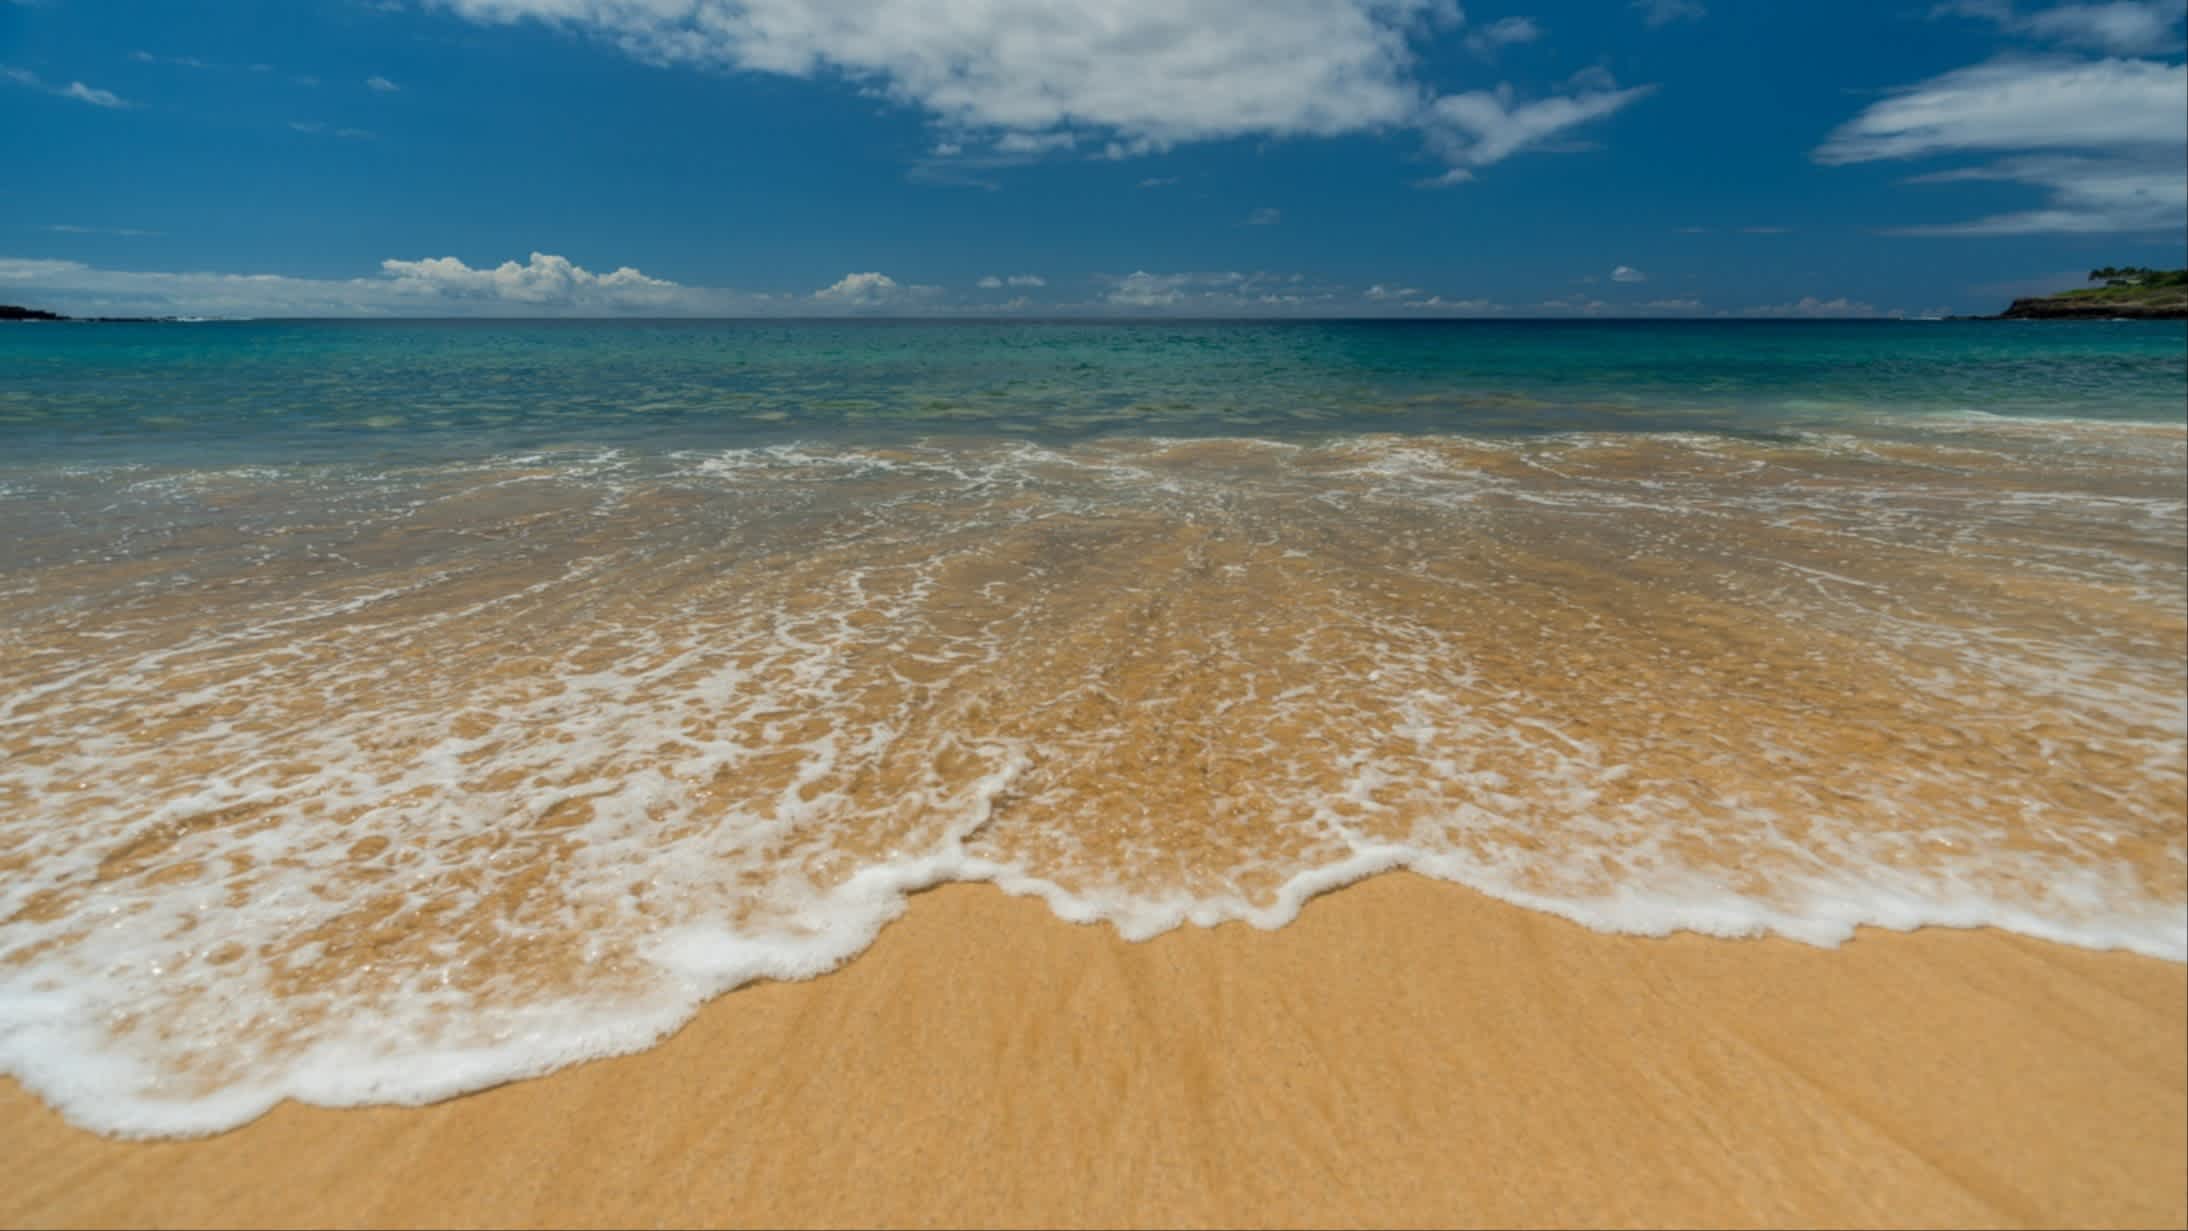 Der Strand auf Lanai, Hawaii, USA bei Sonnenschein und mit Blick auf das Meer und den goldenen Sand.